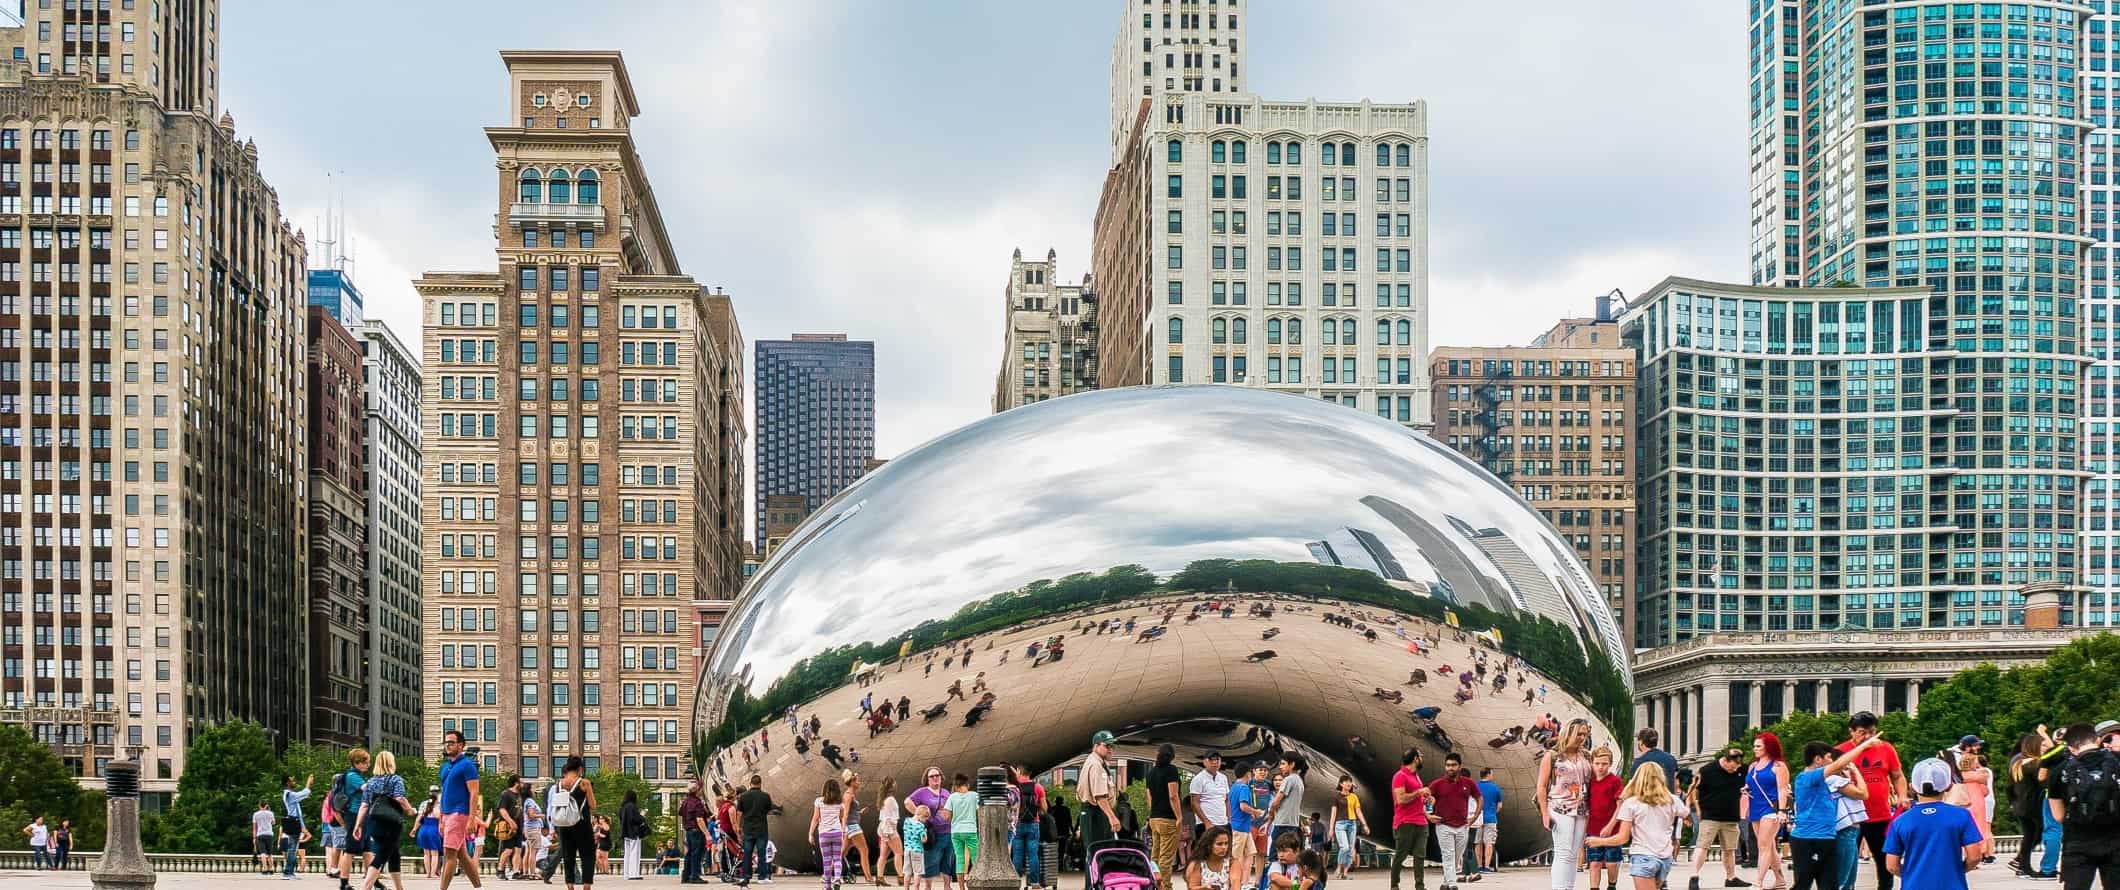 Um enorme bob cromado reflexivo com pessoas ao redor e edifícios altos atrás dele em Chicago, EUA.